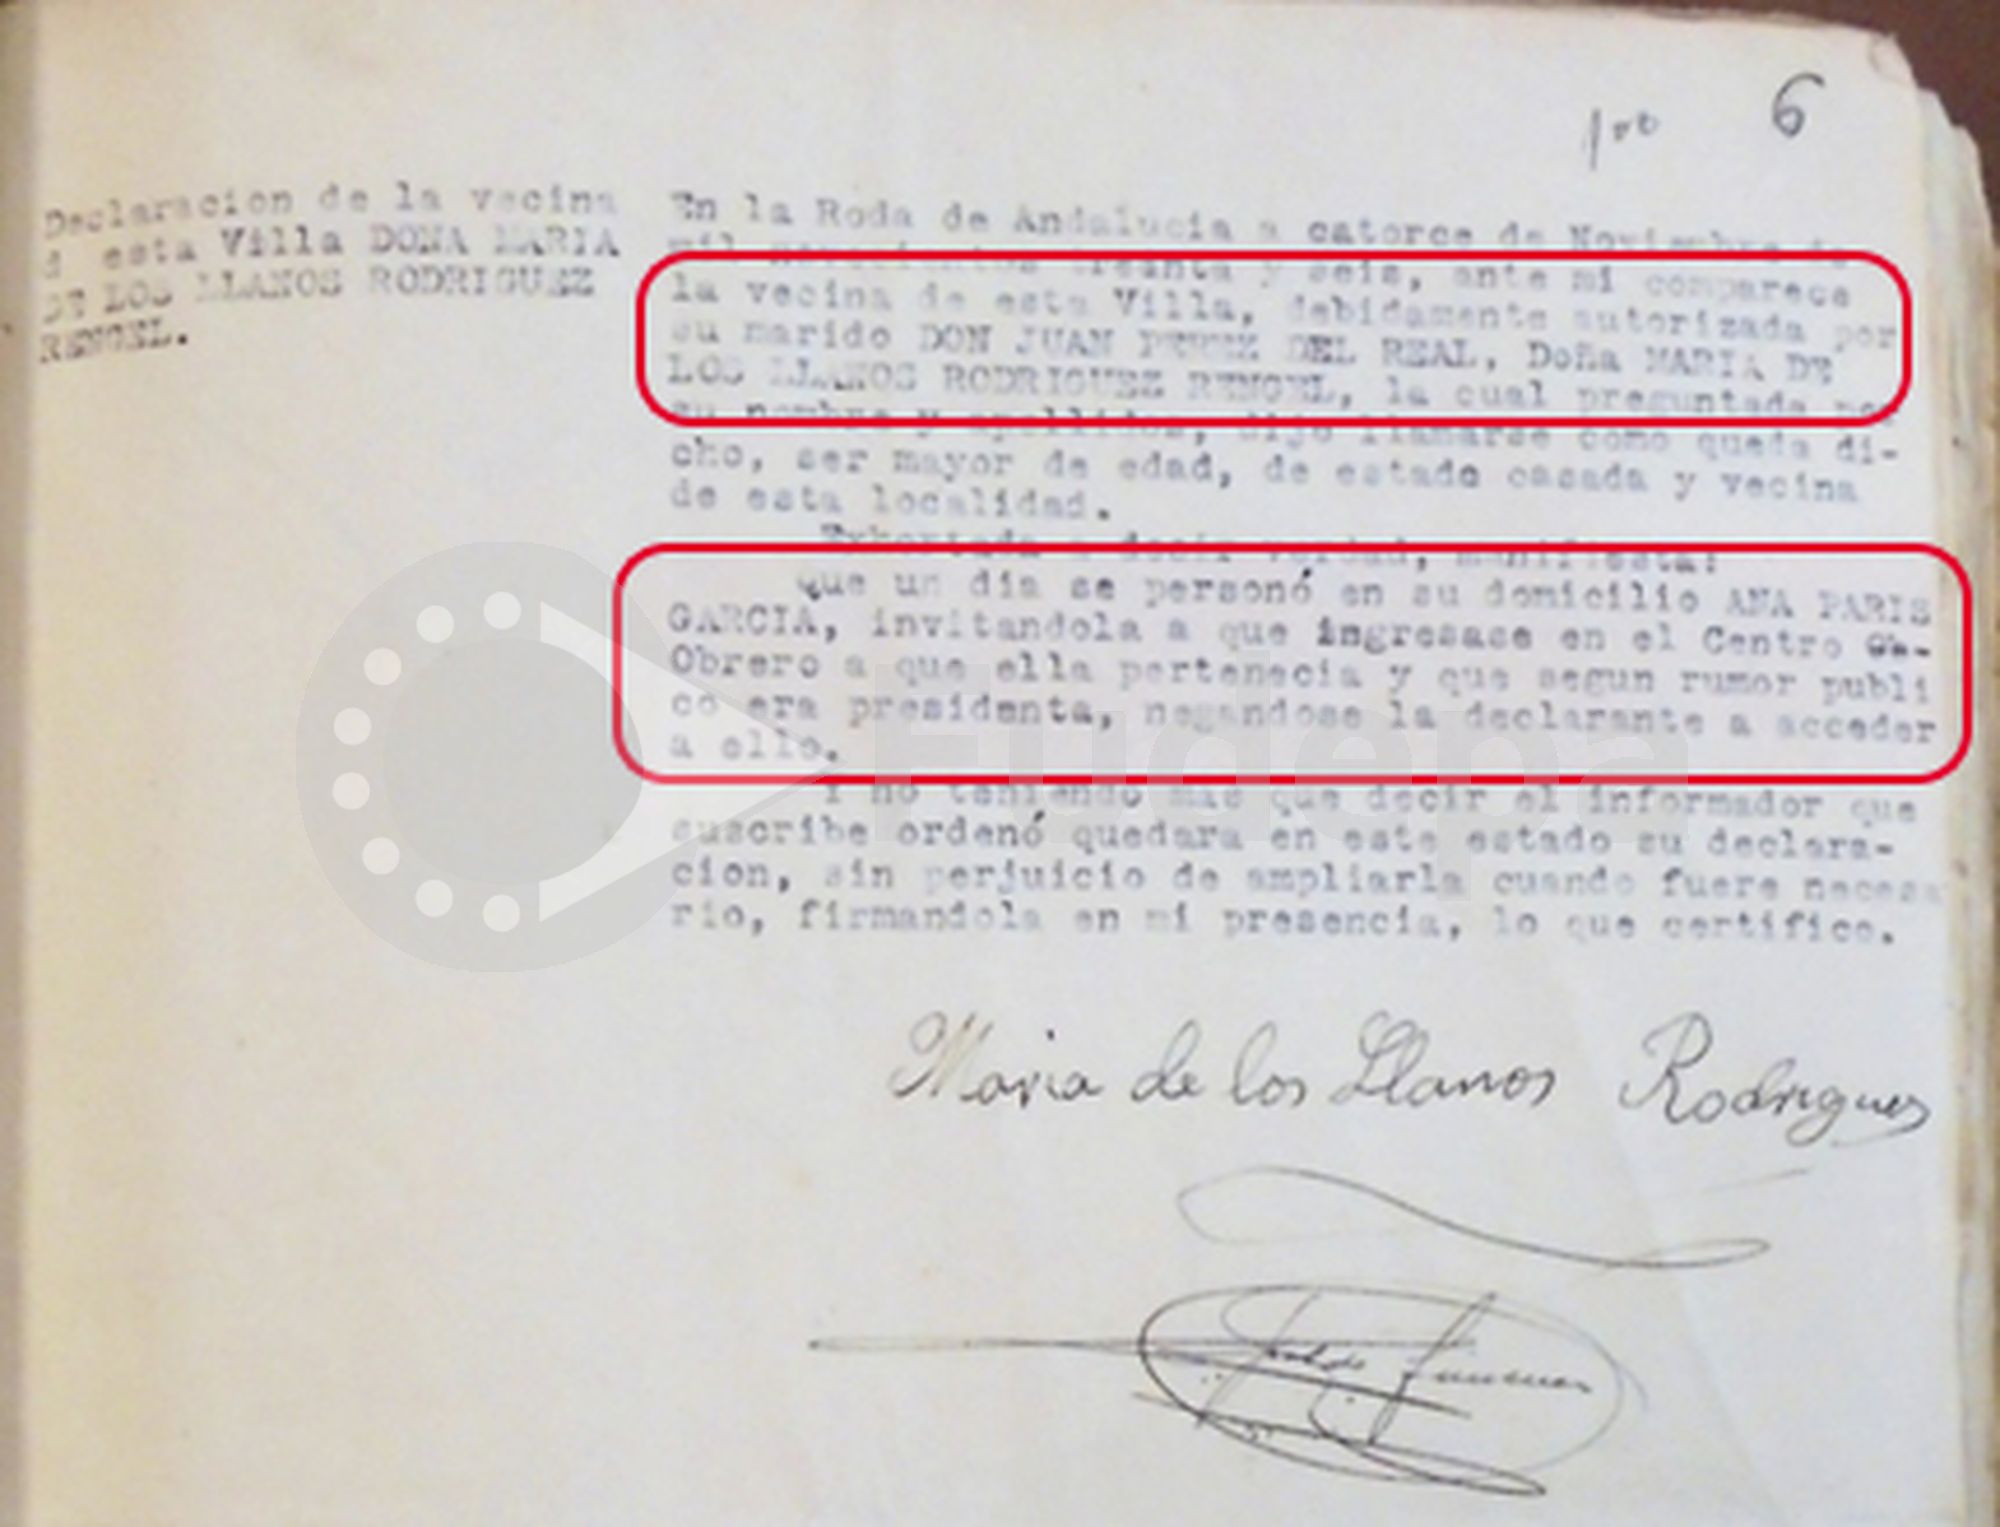 Declaración de María de los Llanos Rodríguez Rengel, debidamente autorizada por su marido, sobre la invitación que recibió de Ana París para que se afiliara al centro obrero al que ella pertenecía y del que era su presidenta.